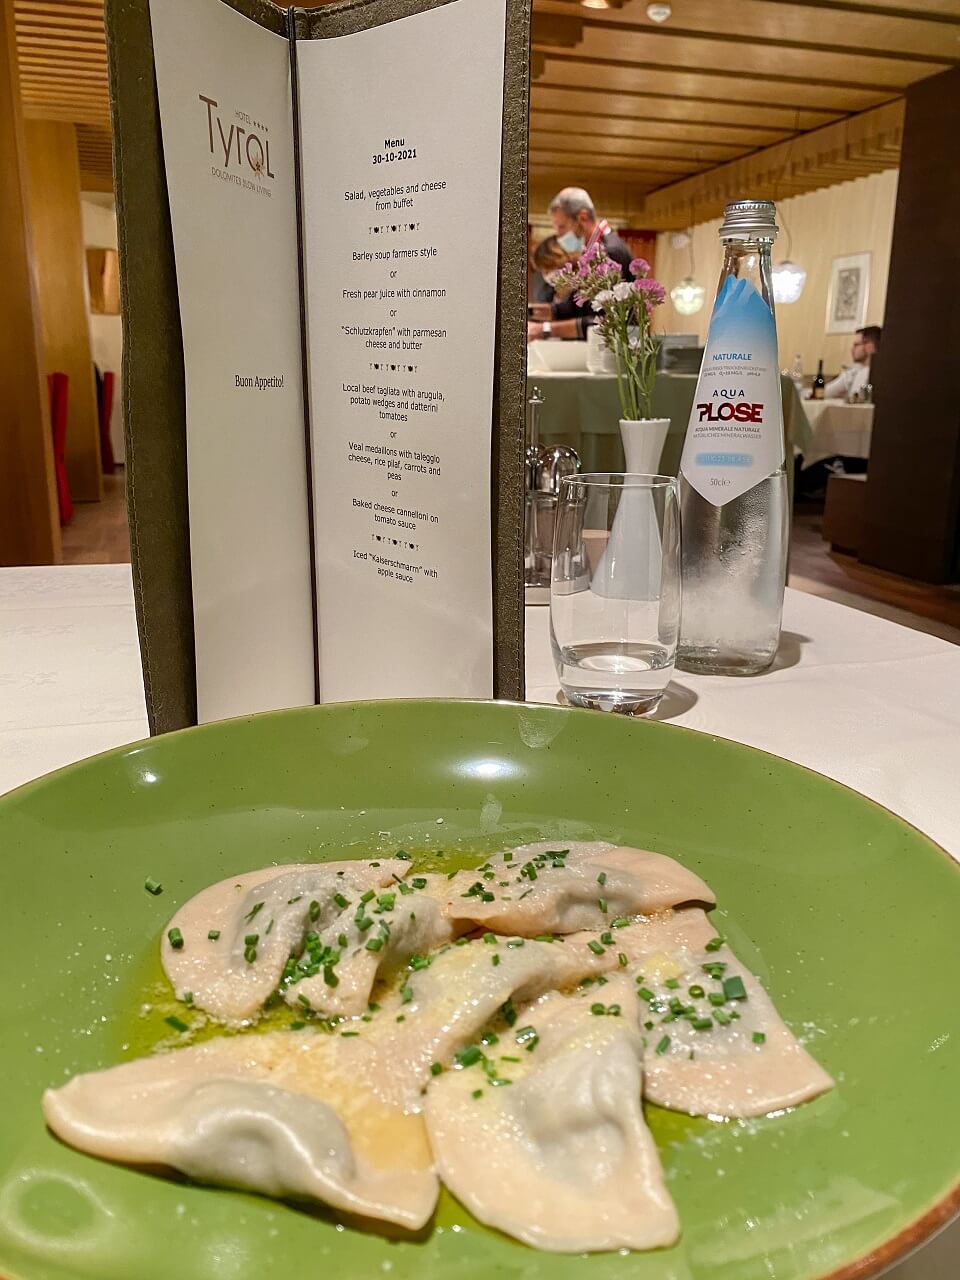 ravioli for dinner in italy hotel